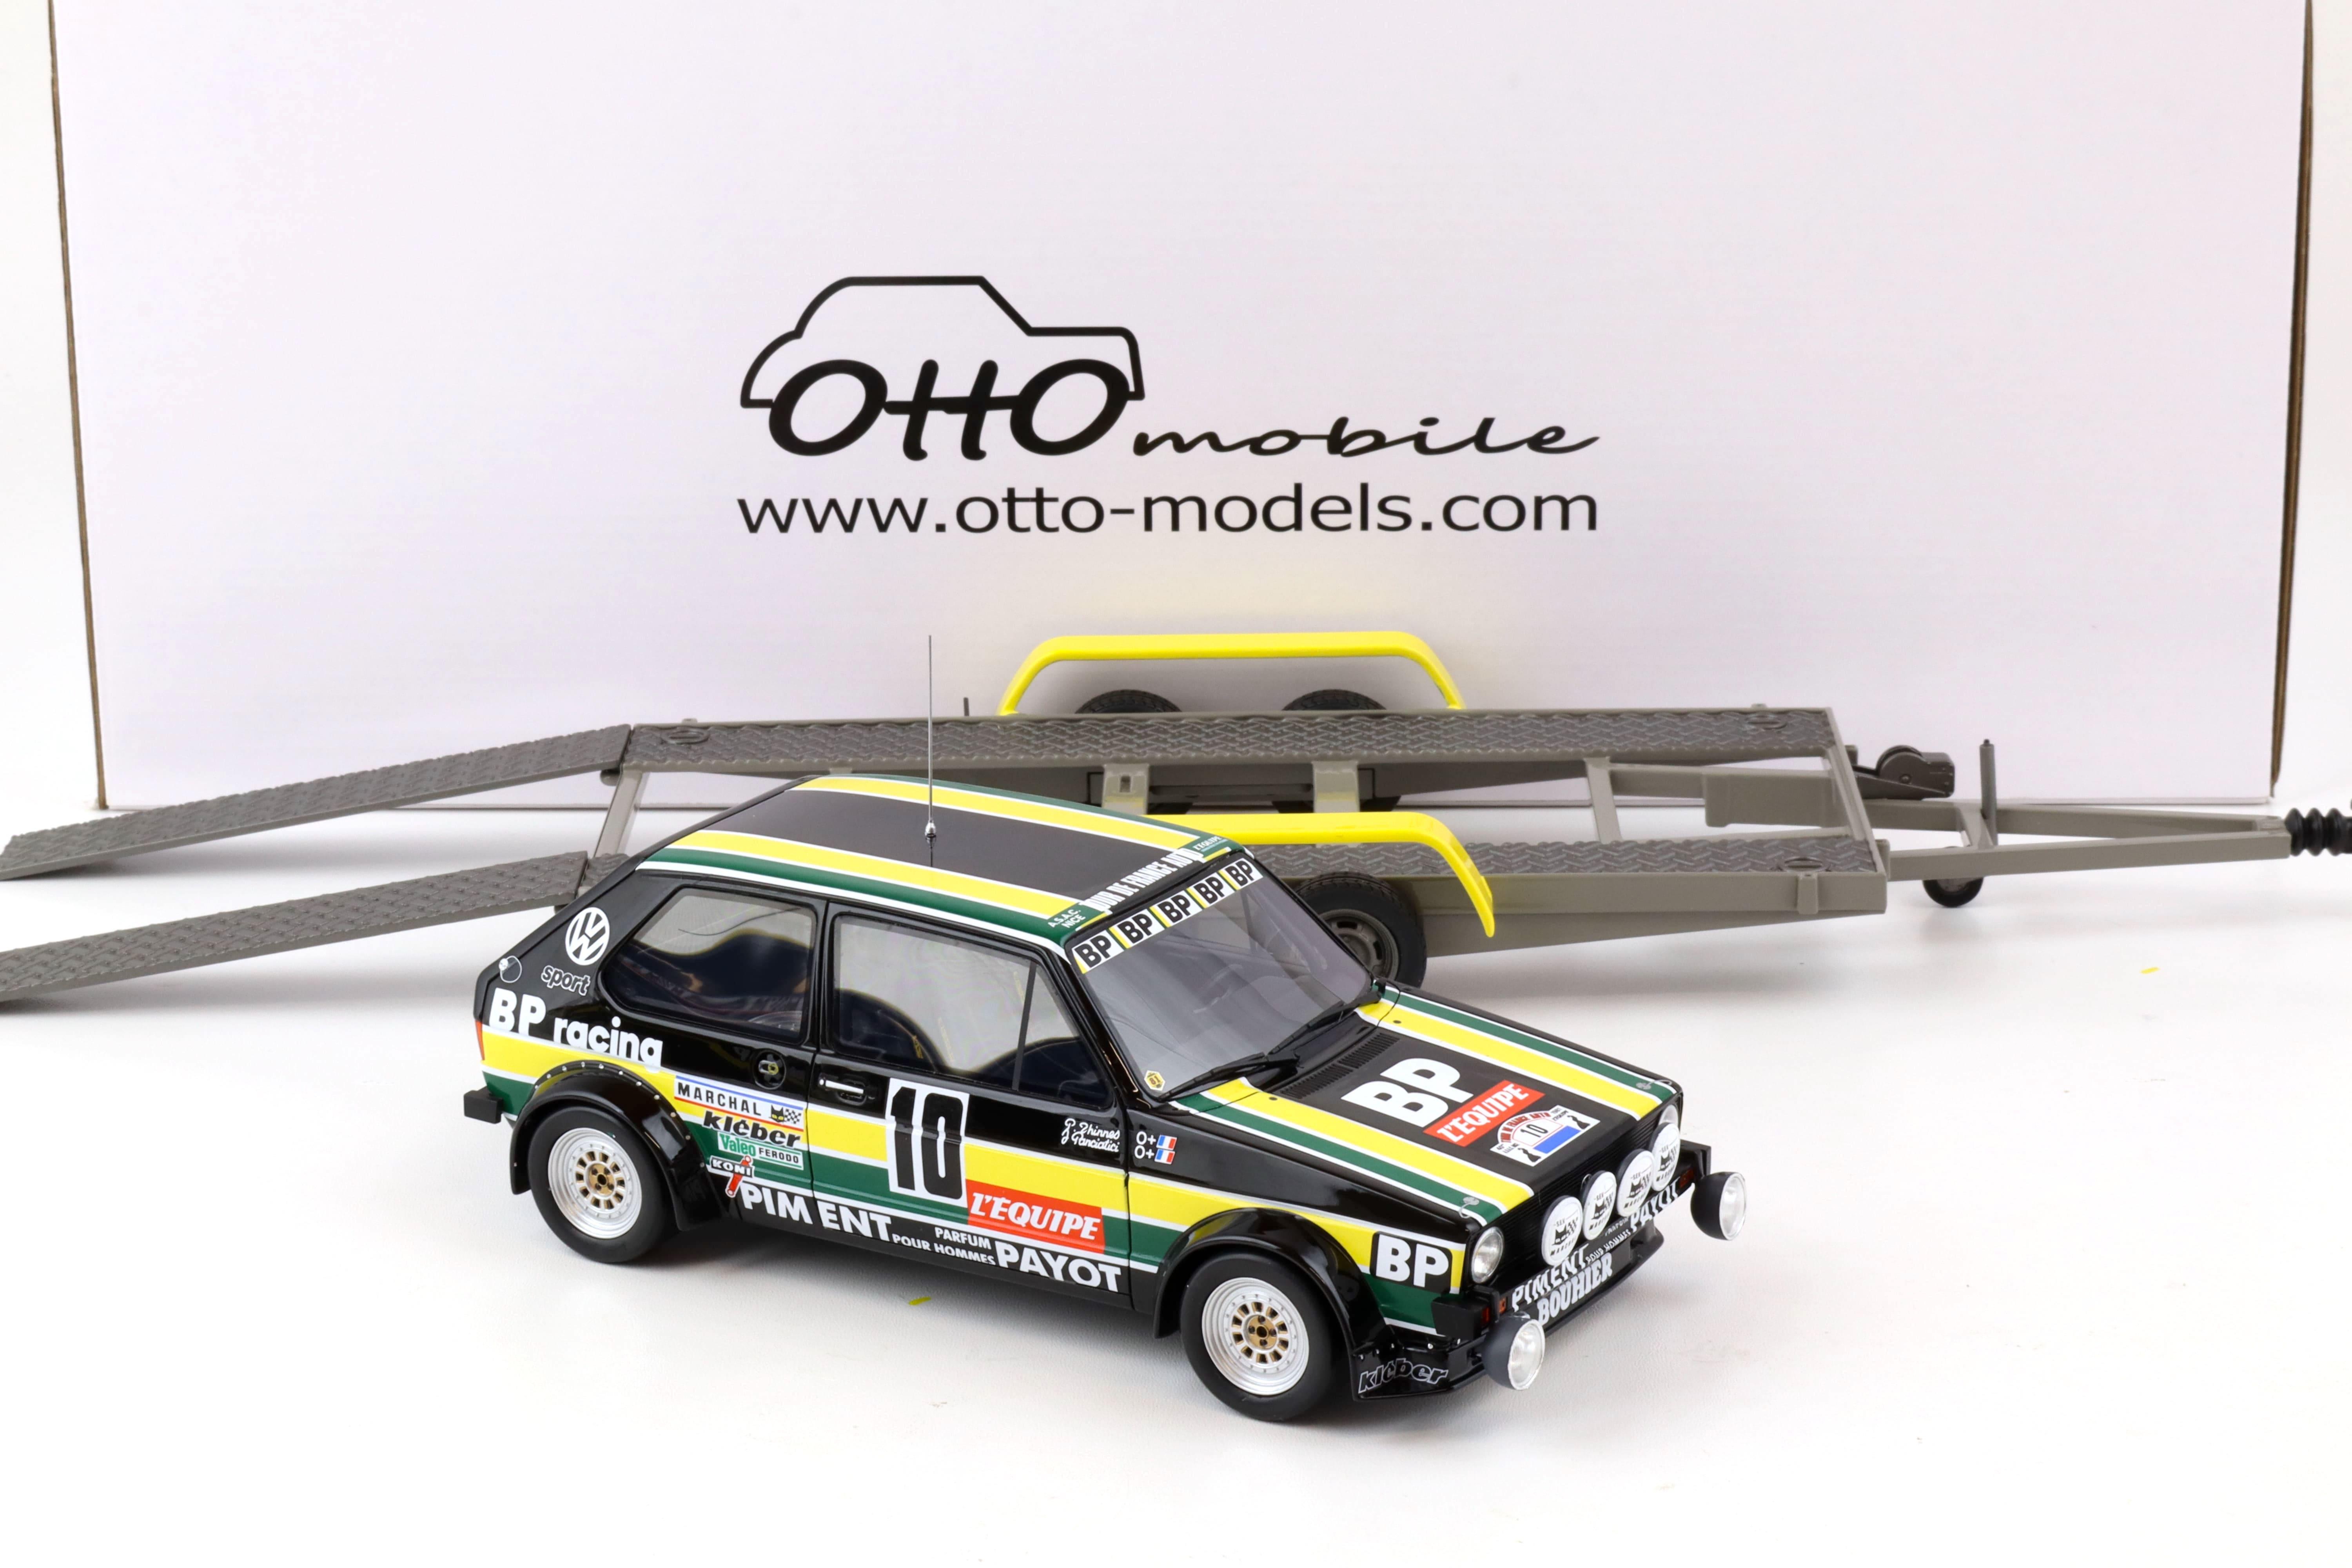 1:18 OTTO mobile OT353 VW Rallye Pack VW LT35 + Golf GTI MK1 GR.2 + Trailer